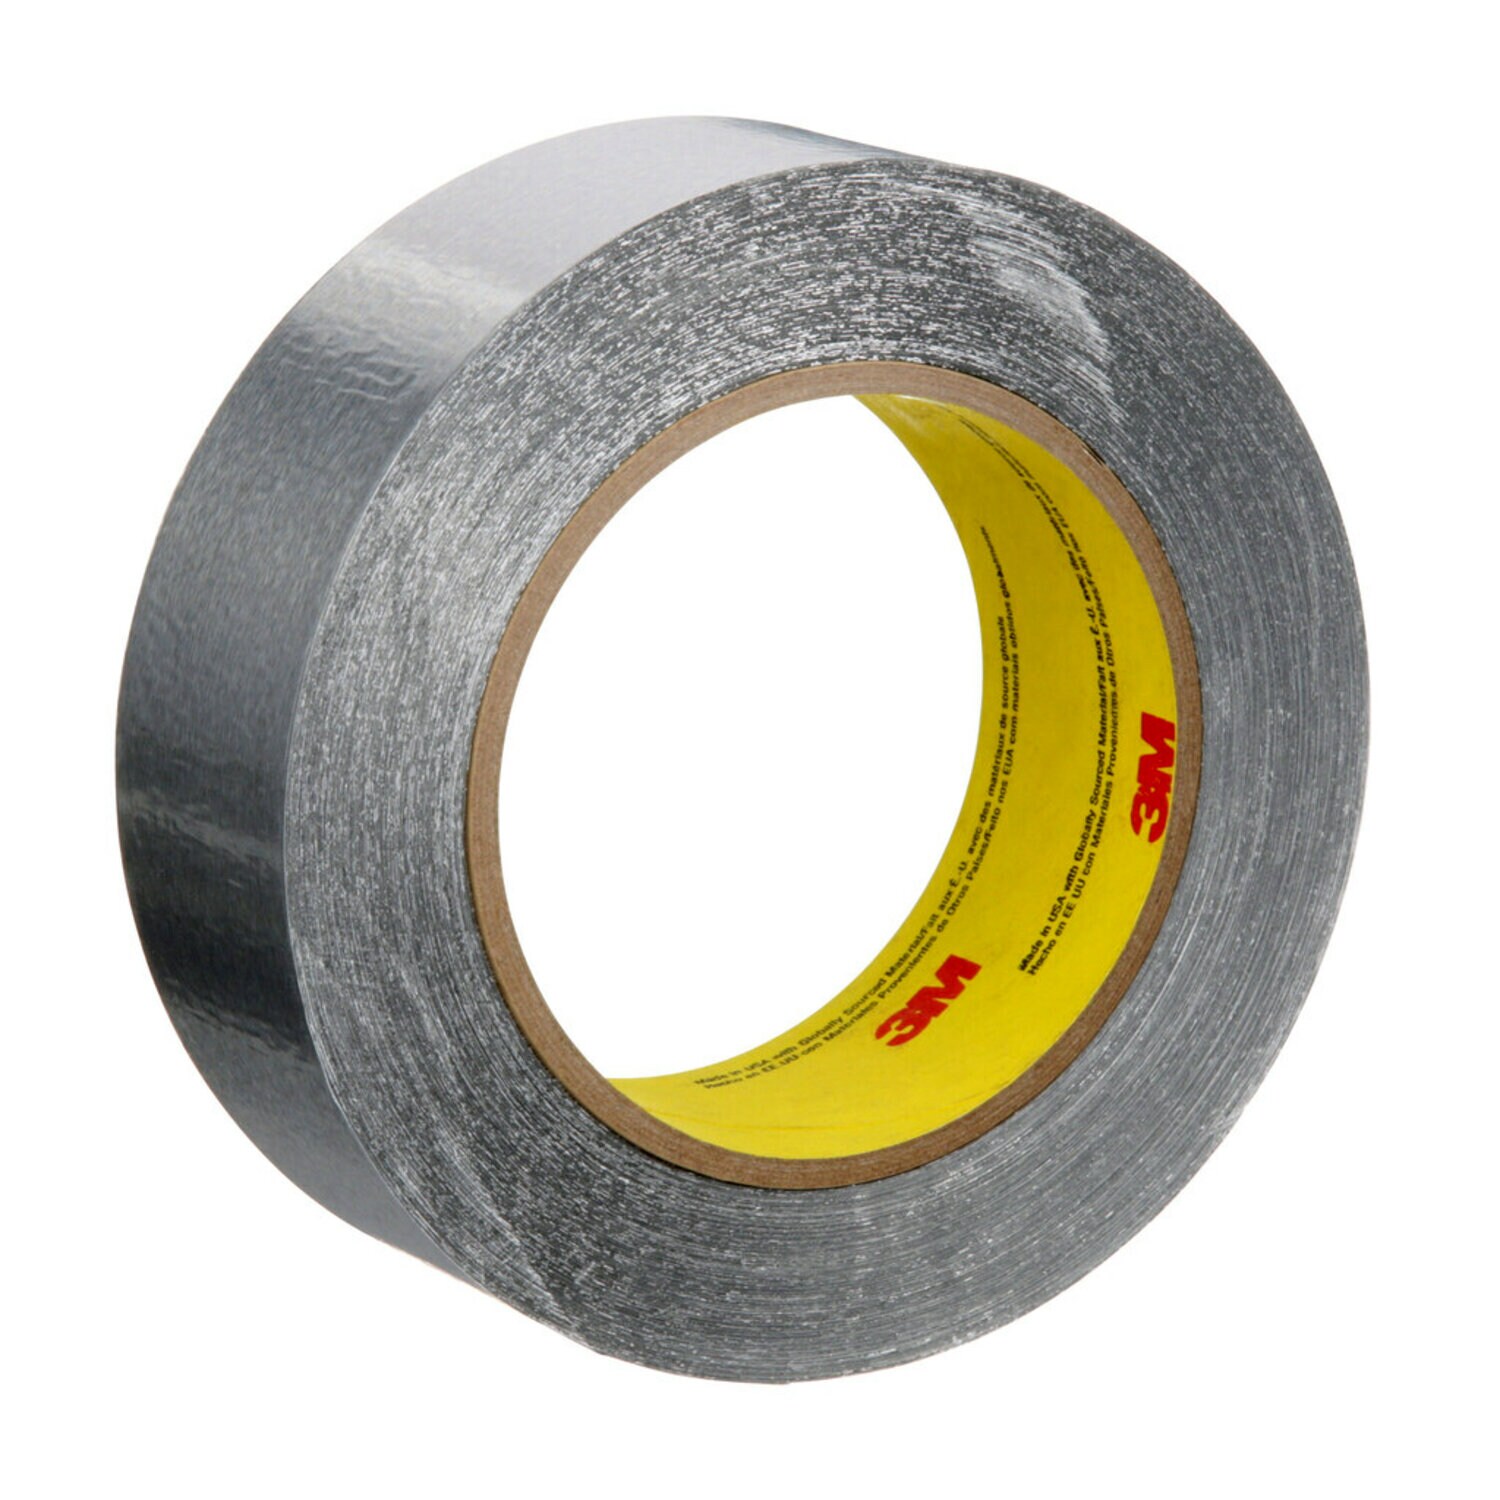 7100053917 - 3M Aluminum Foil Tape 425, Silver, 1 1/2 in x 60 yd, 4.6 mil, 24 rolls
per case